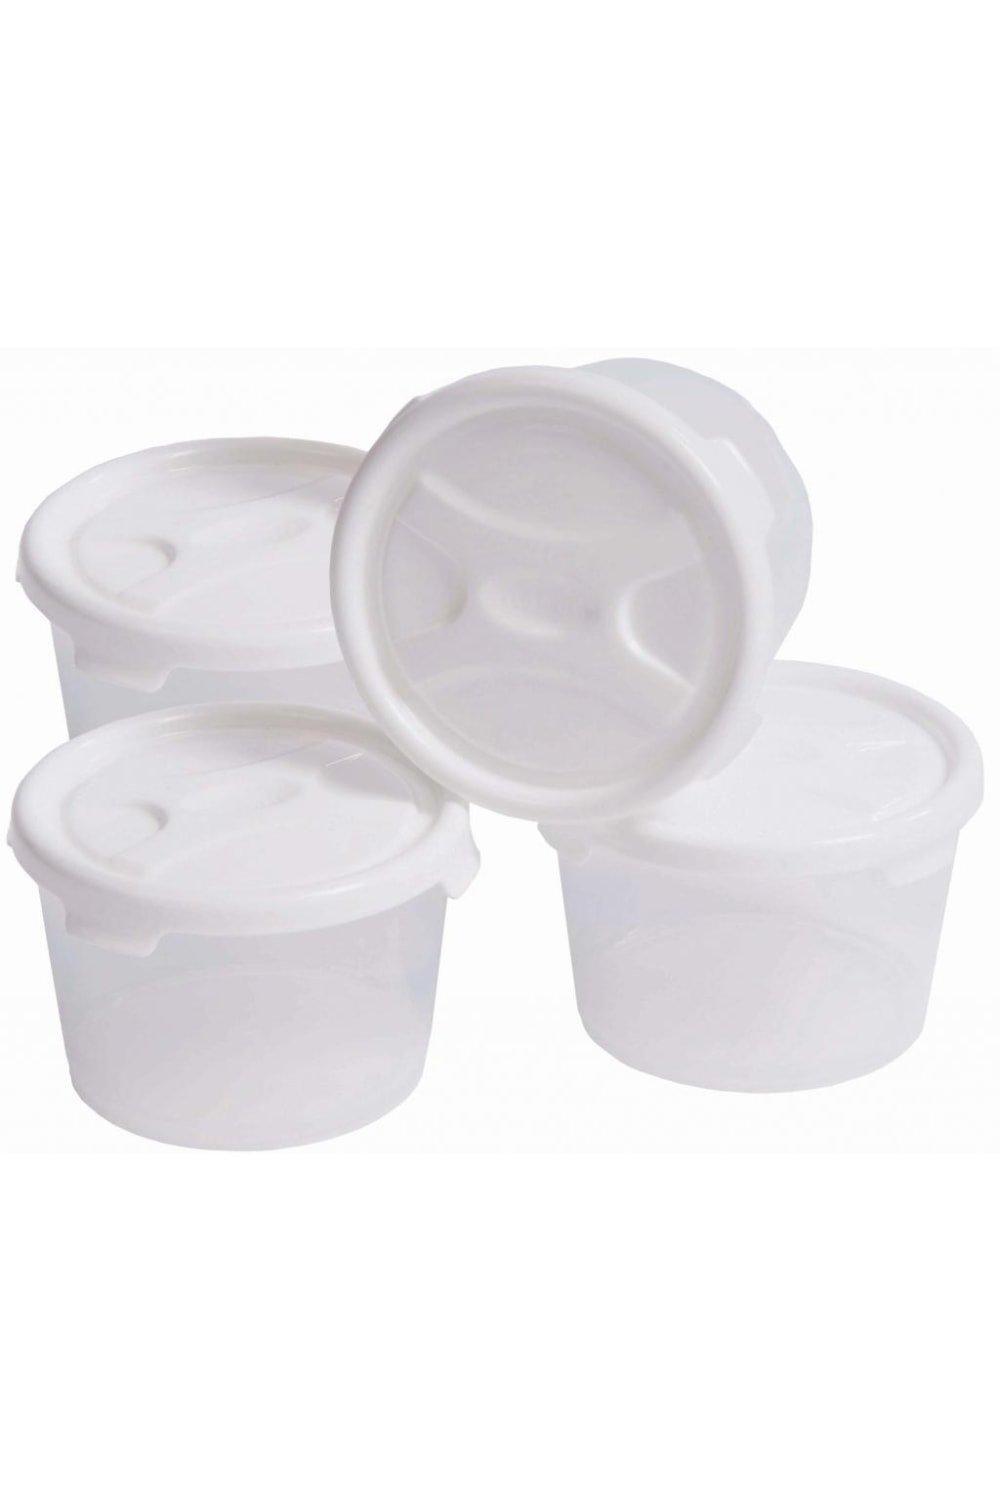 цена Набор для хранения продуктов Handy Pots (4 шт.) Wham, белый